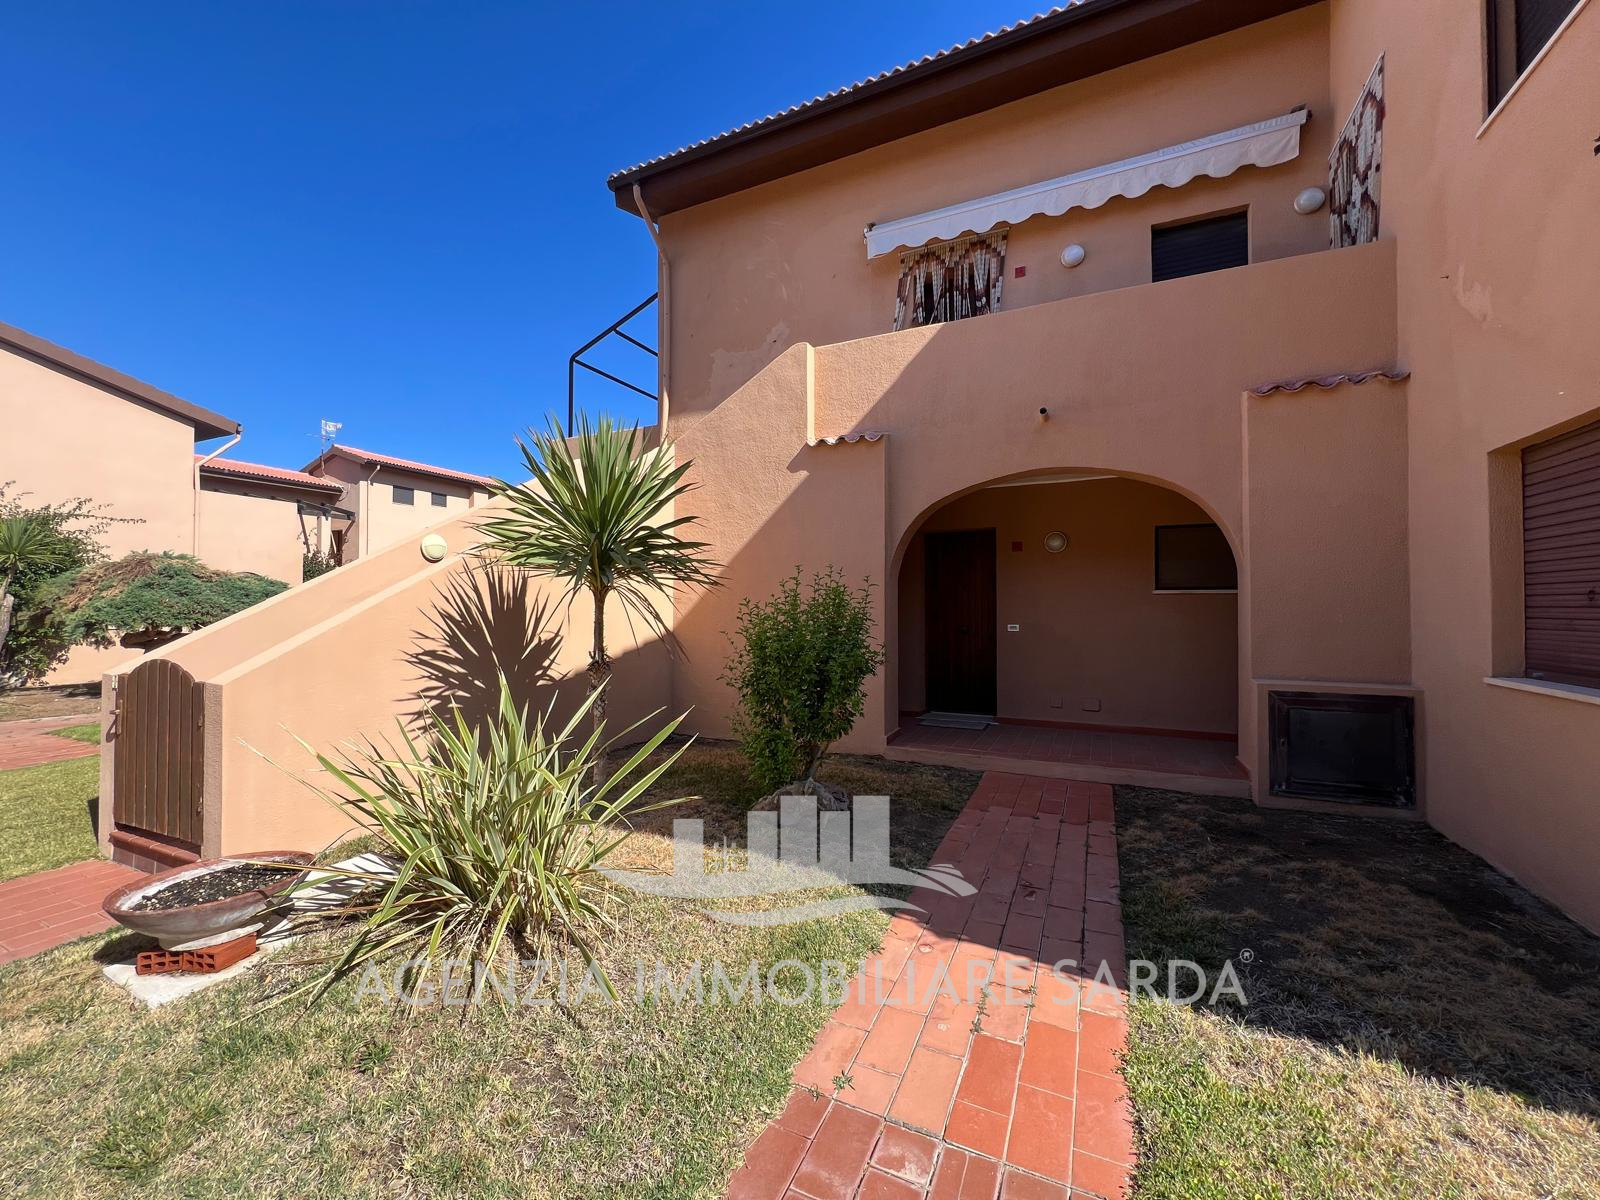 Appartamento in vendita in corso italia 4848, Castelsardo